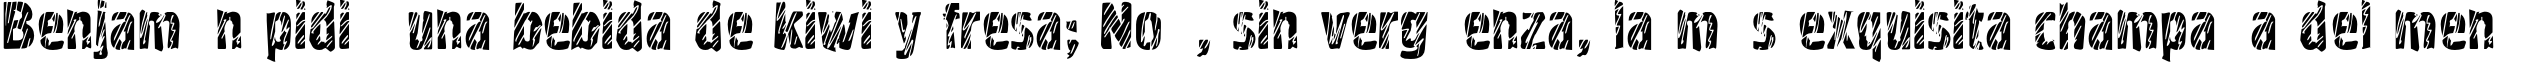 Пример написания шрифтом Graffiti2C текста на испанском